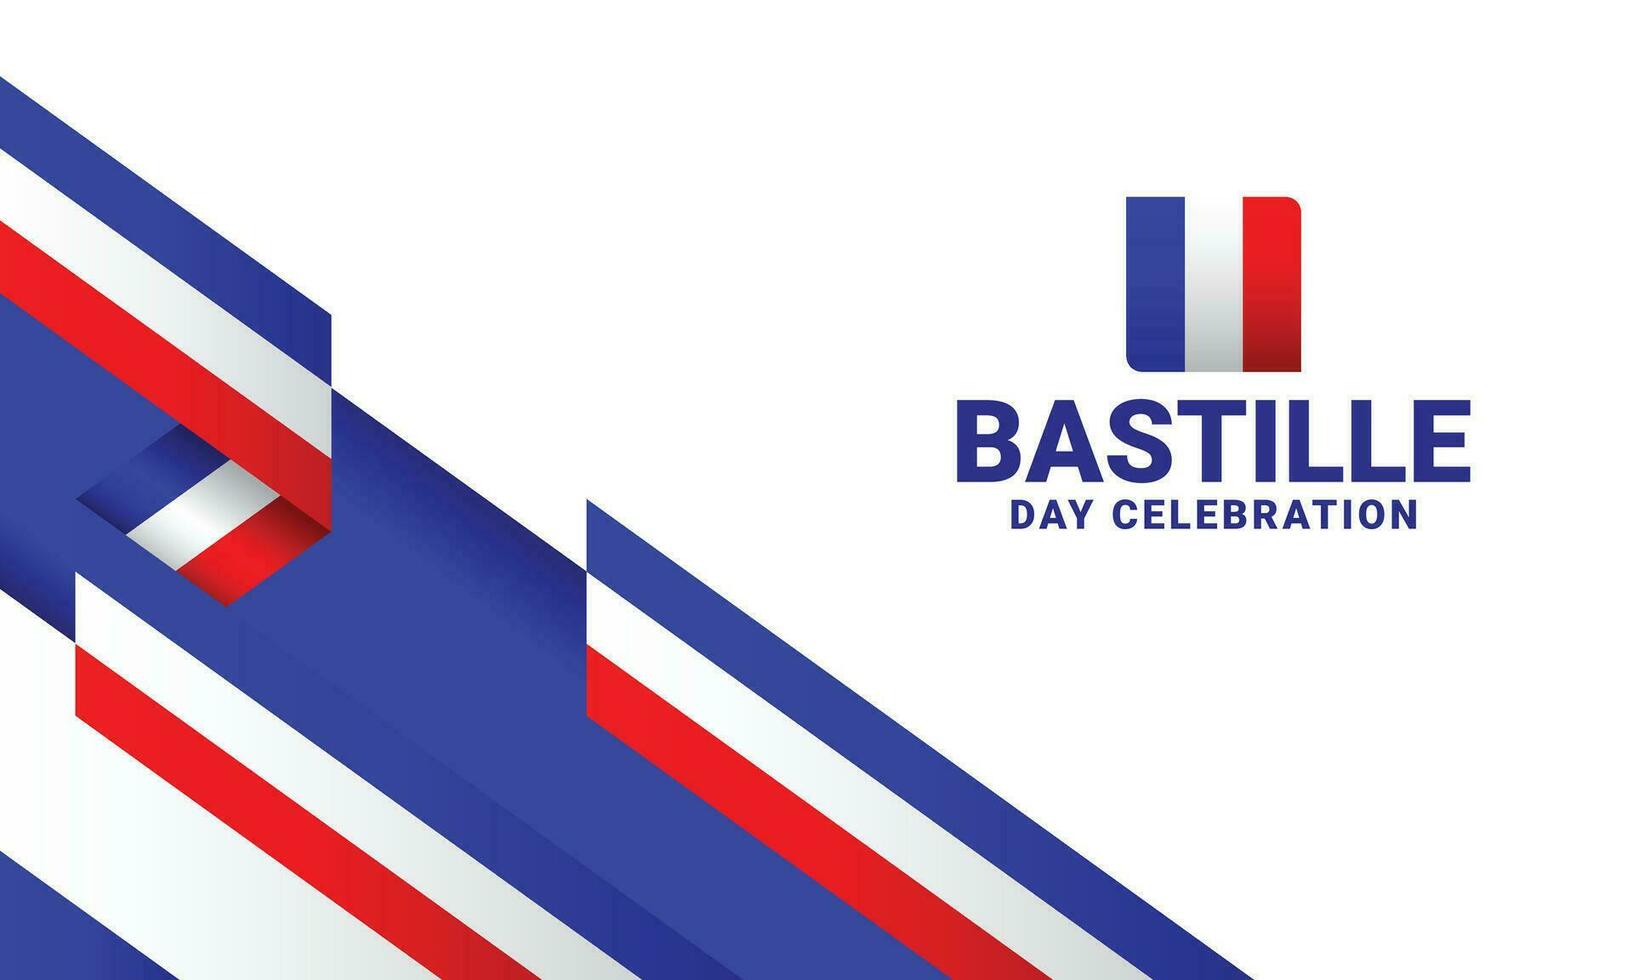 Bastille Independence day event celebrate vector